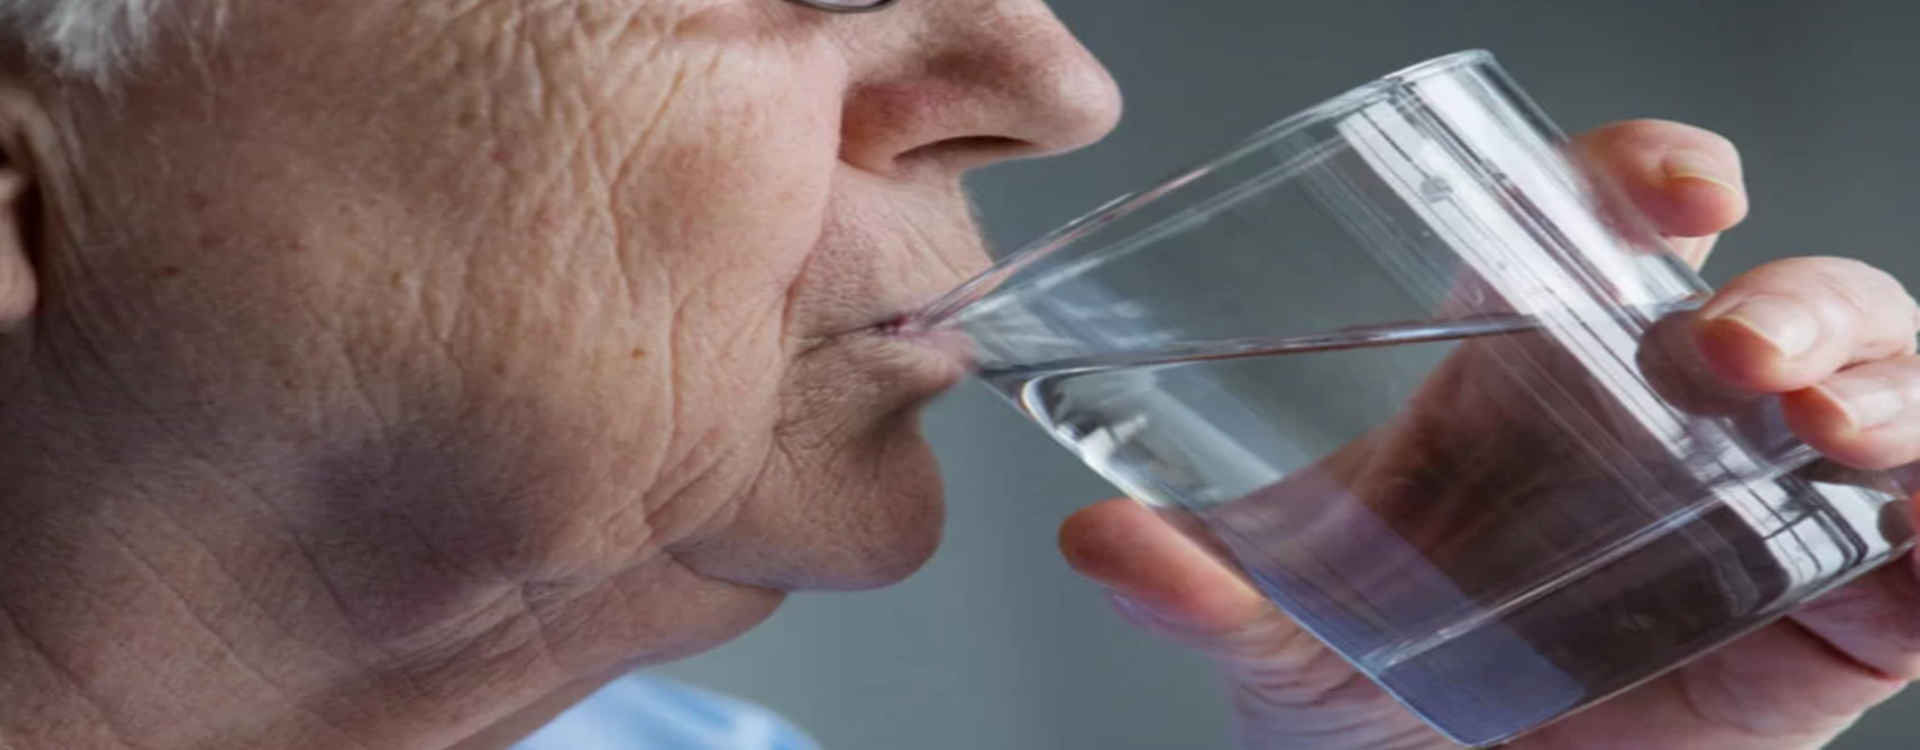 Orsalit Senior płyn nawadniający dla osób starszych